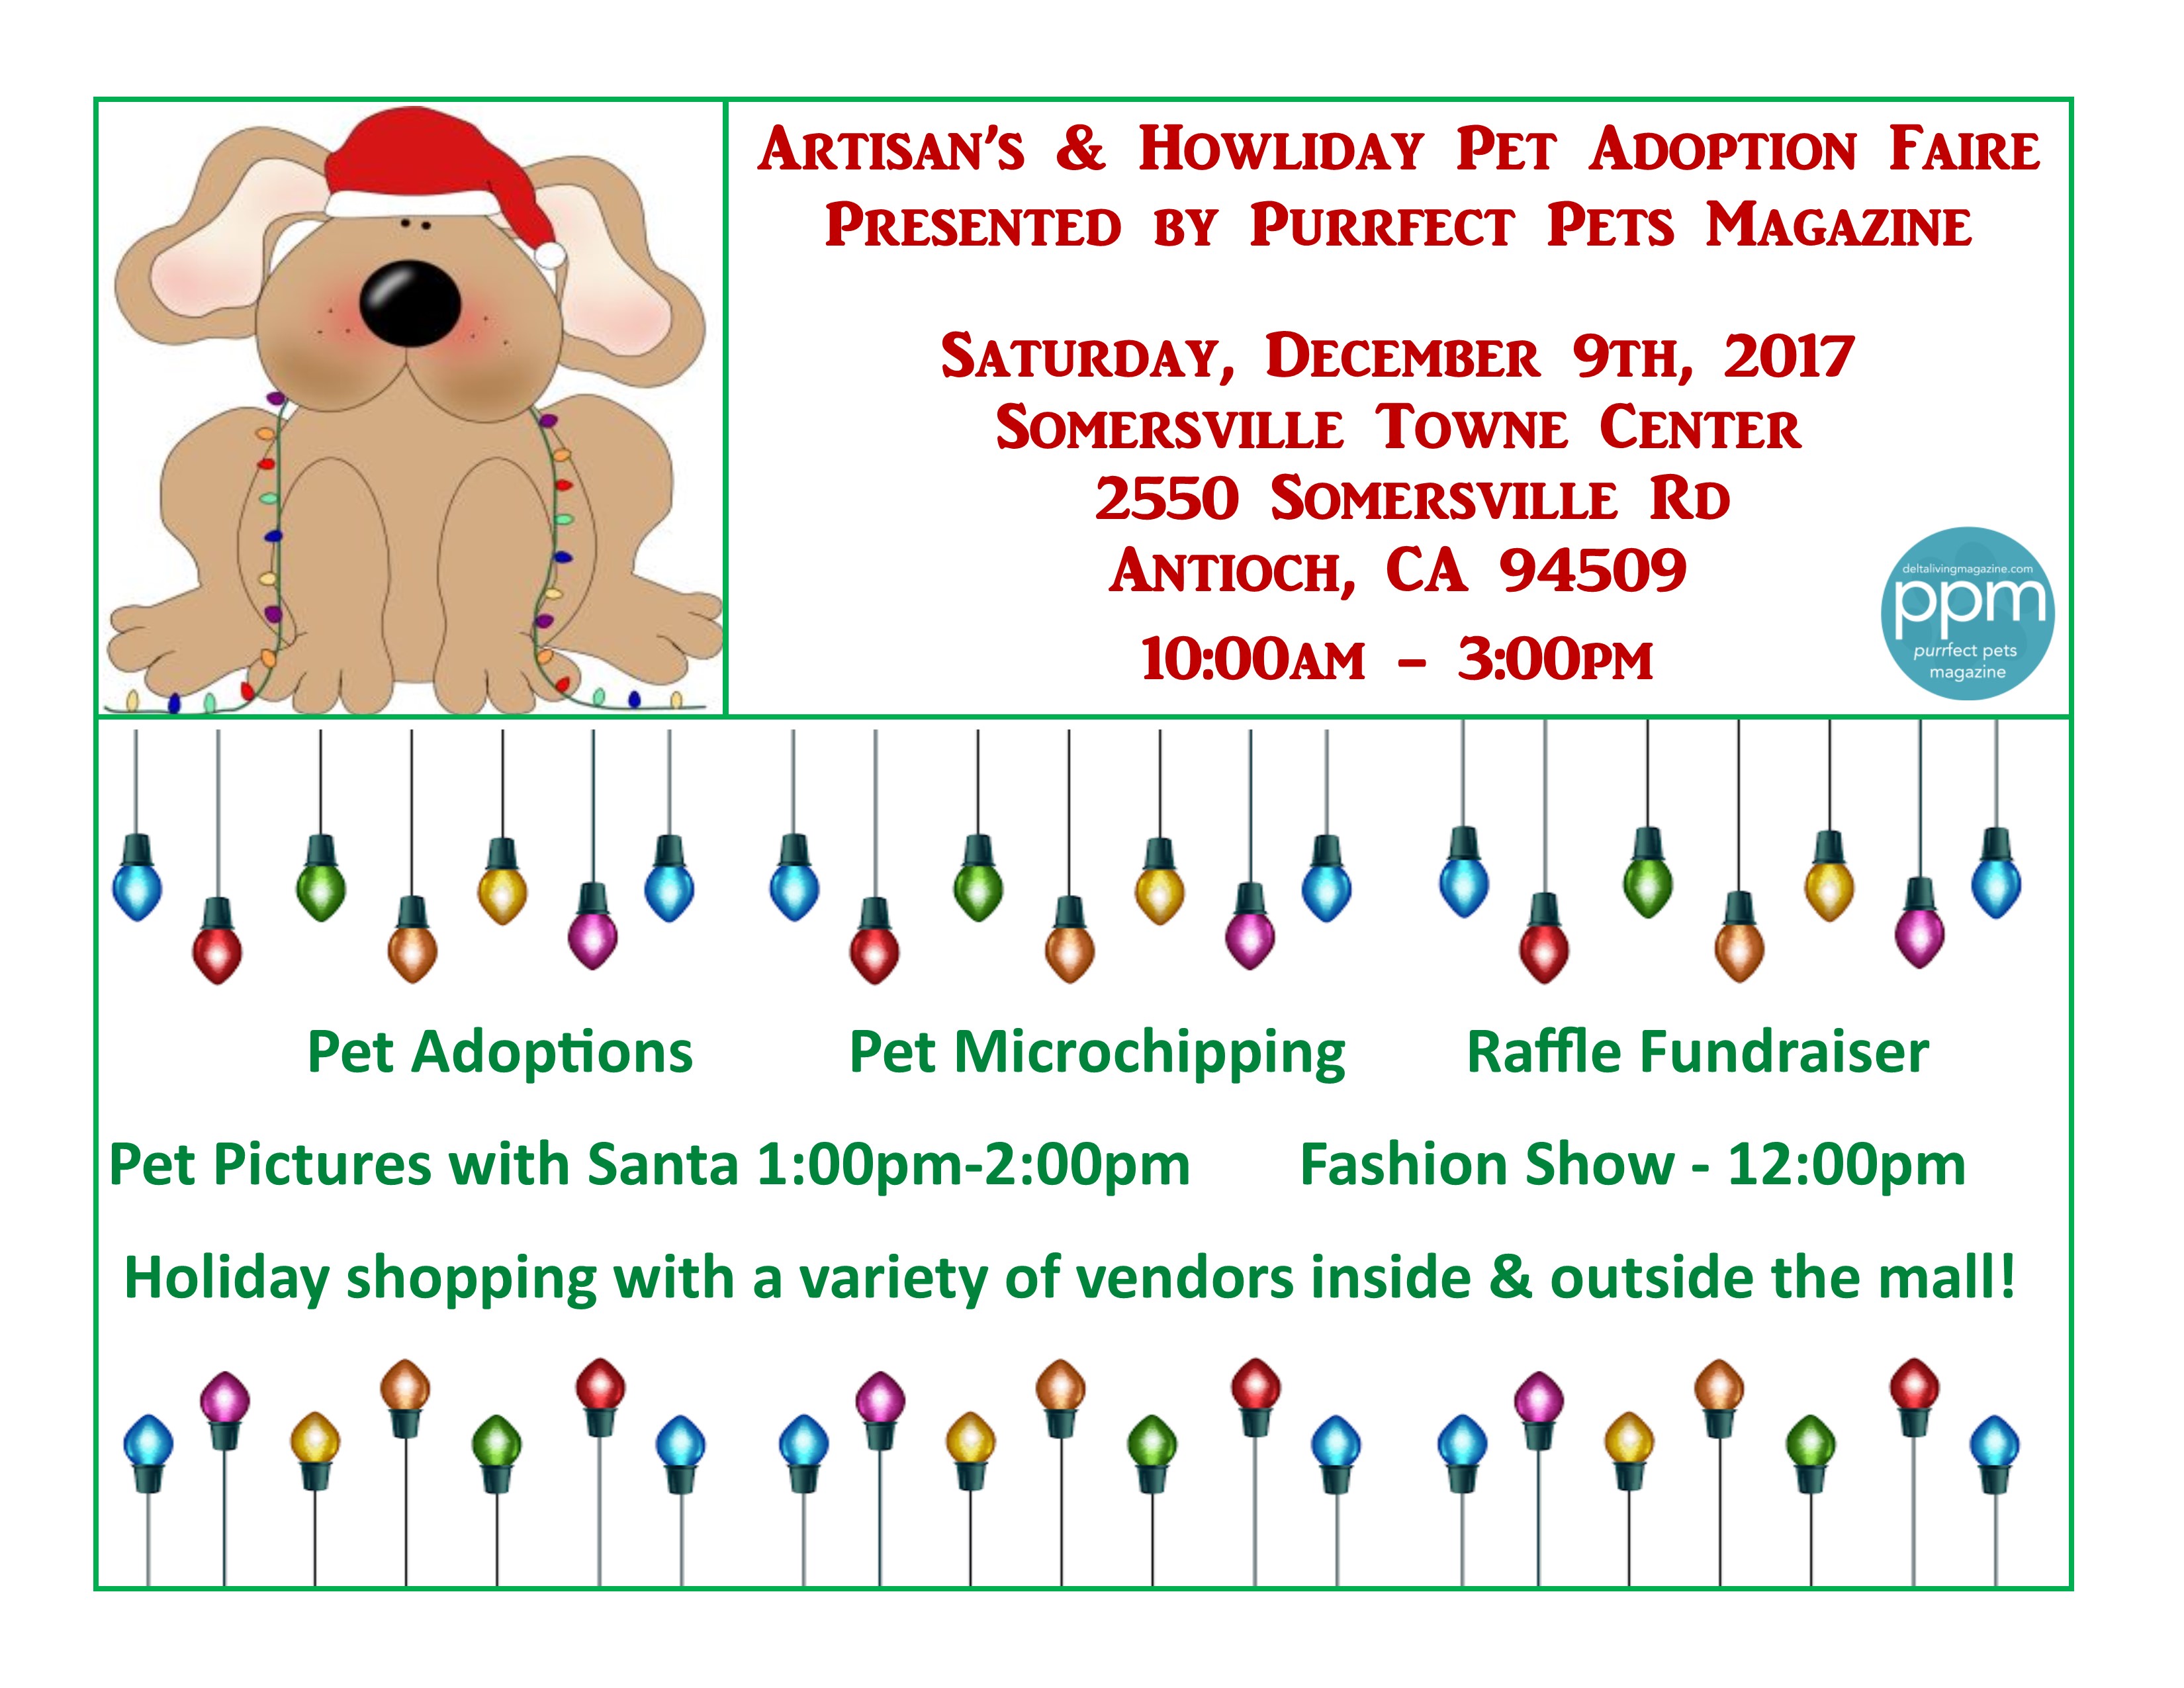 Artisan’s & Howliday Pet Adoption Fair